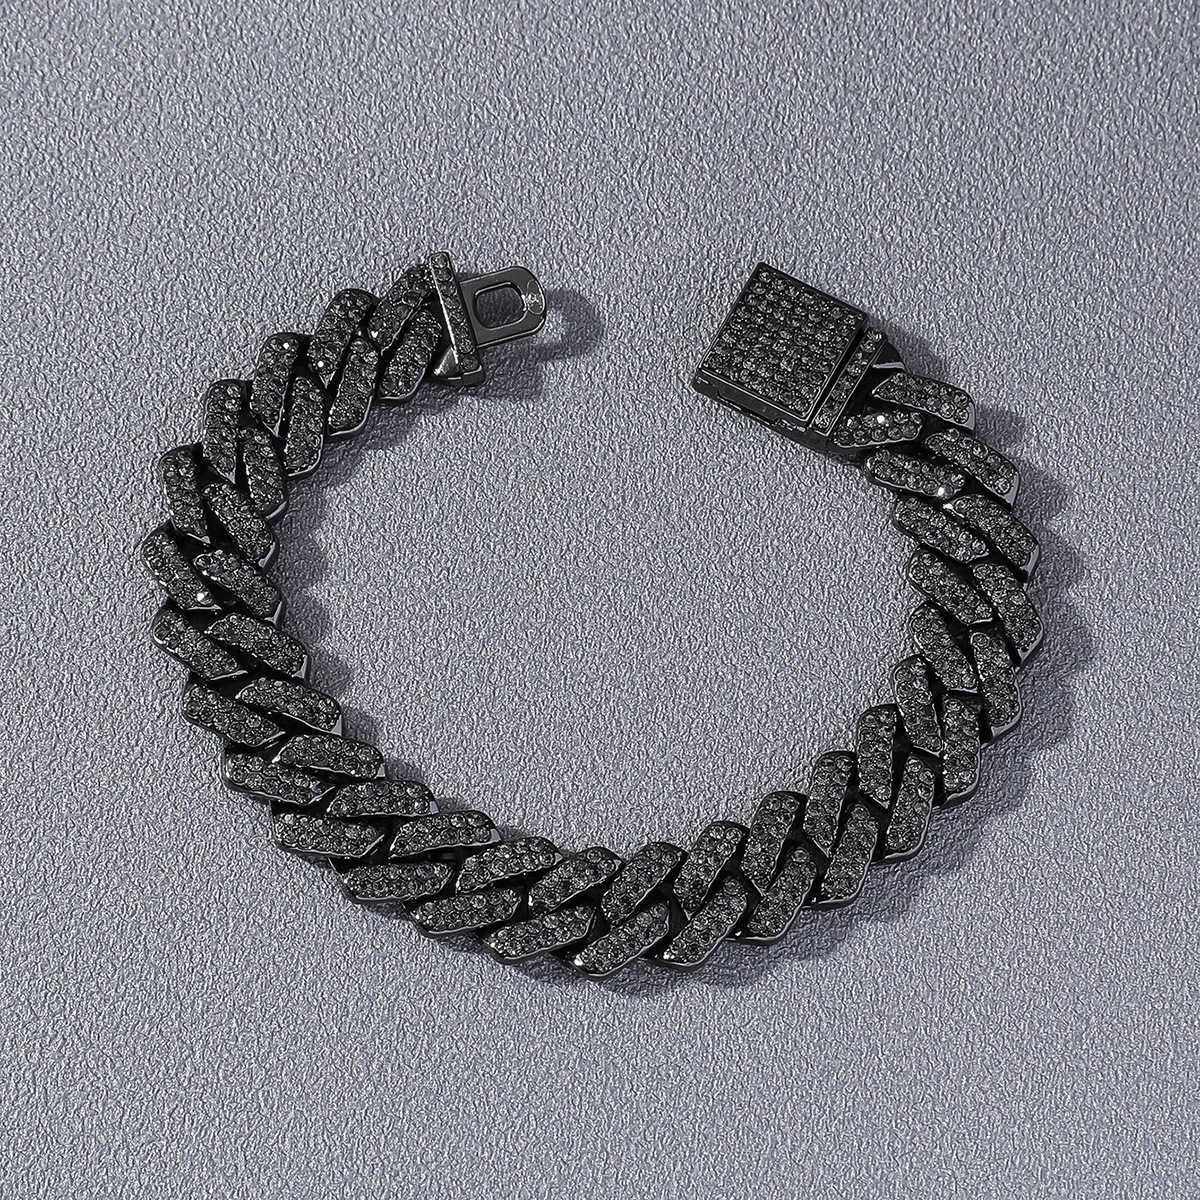 Nero (braccialetto) -8 pollici